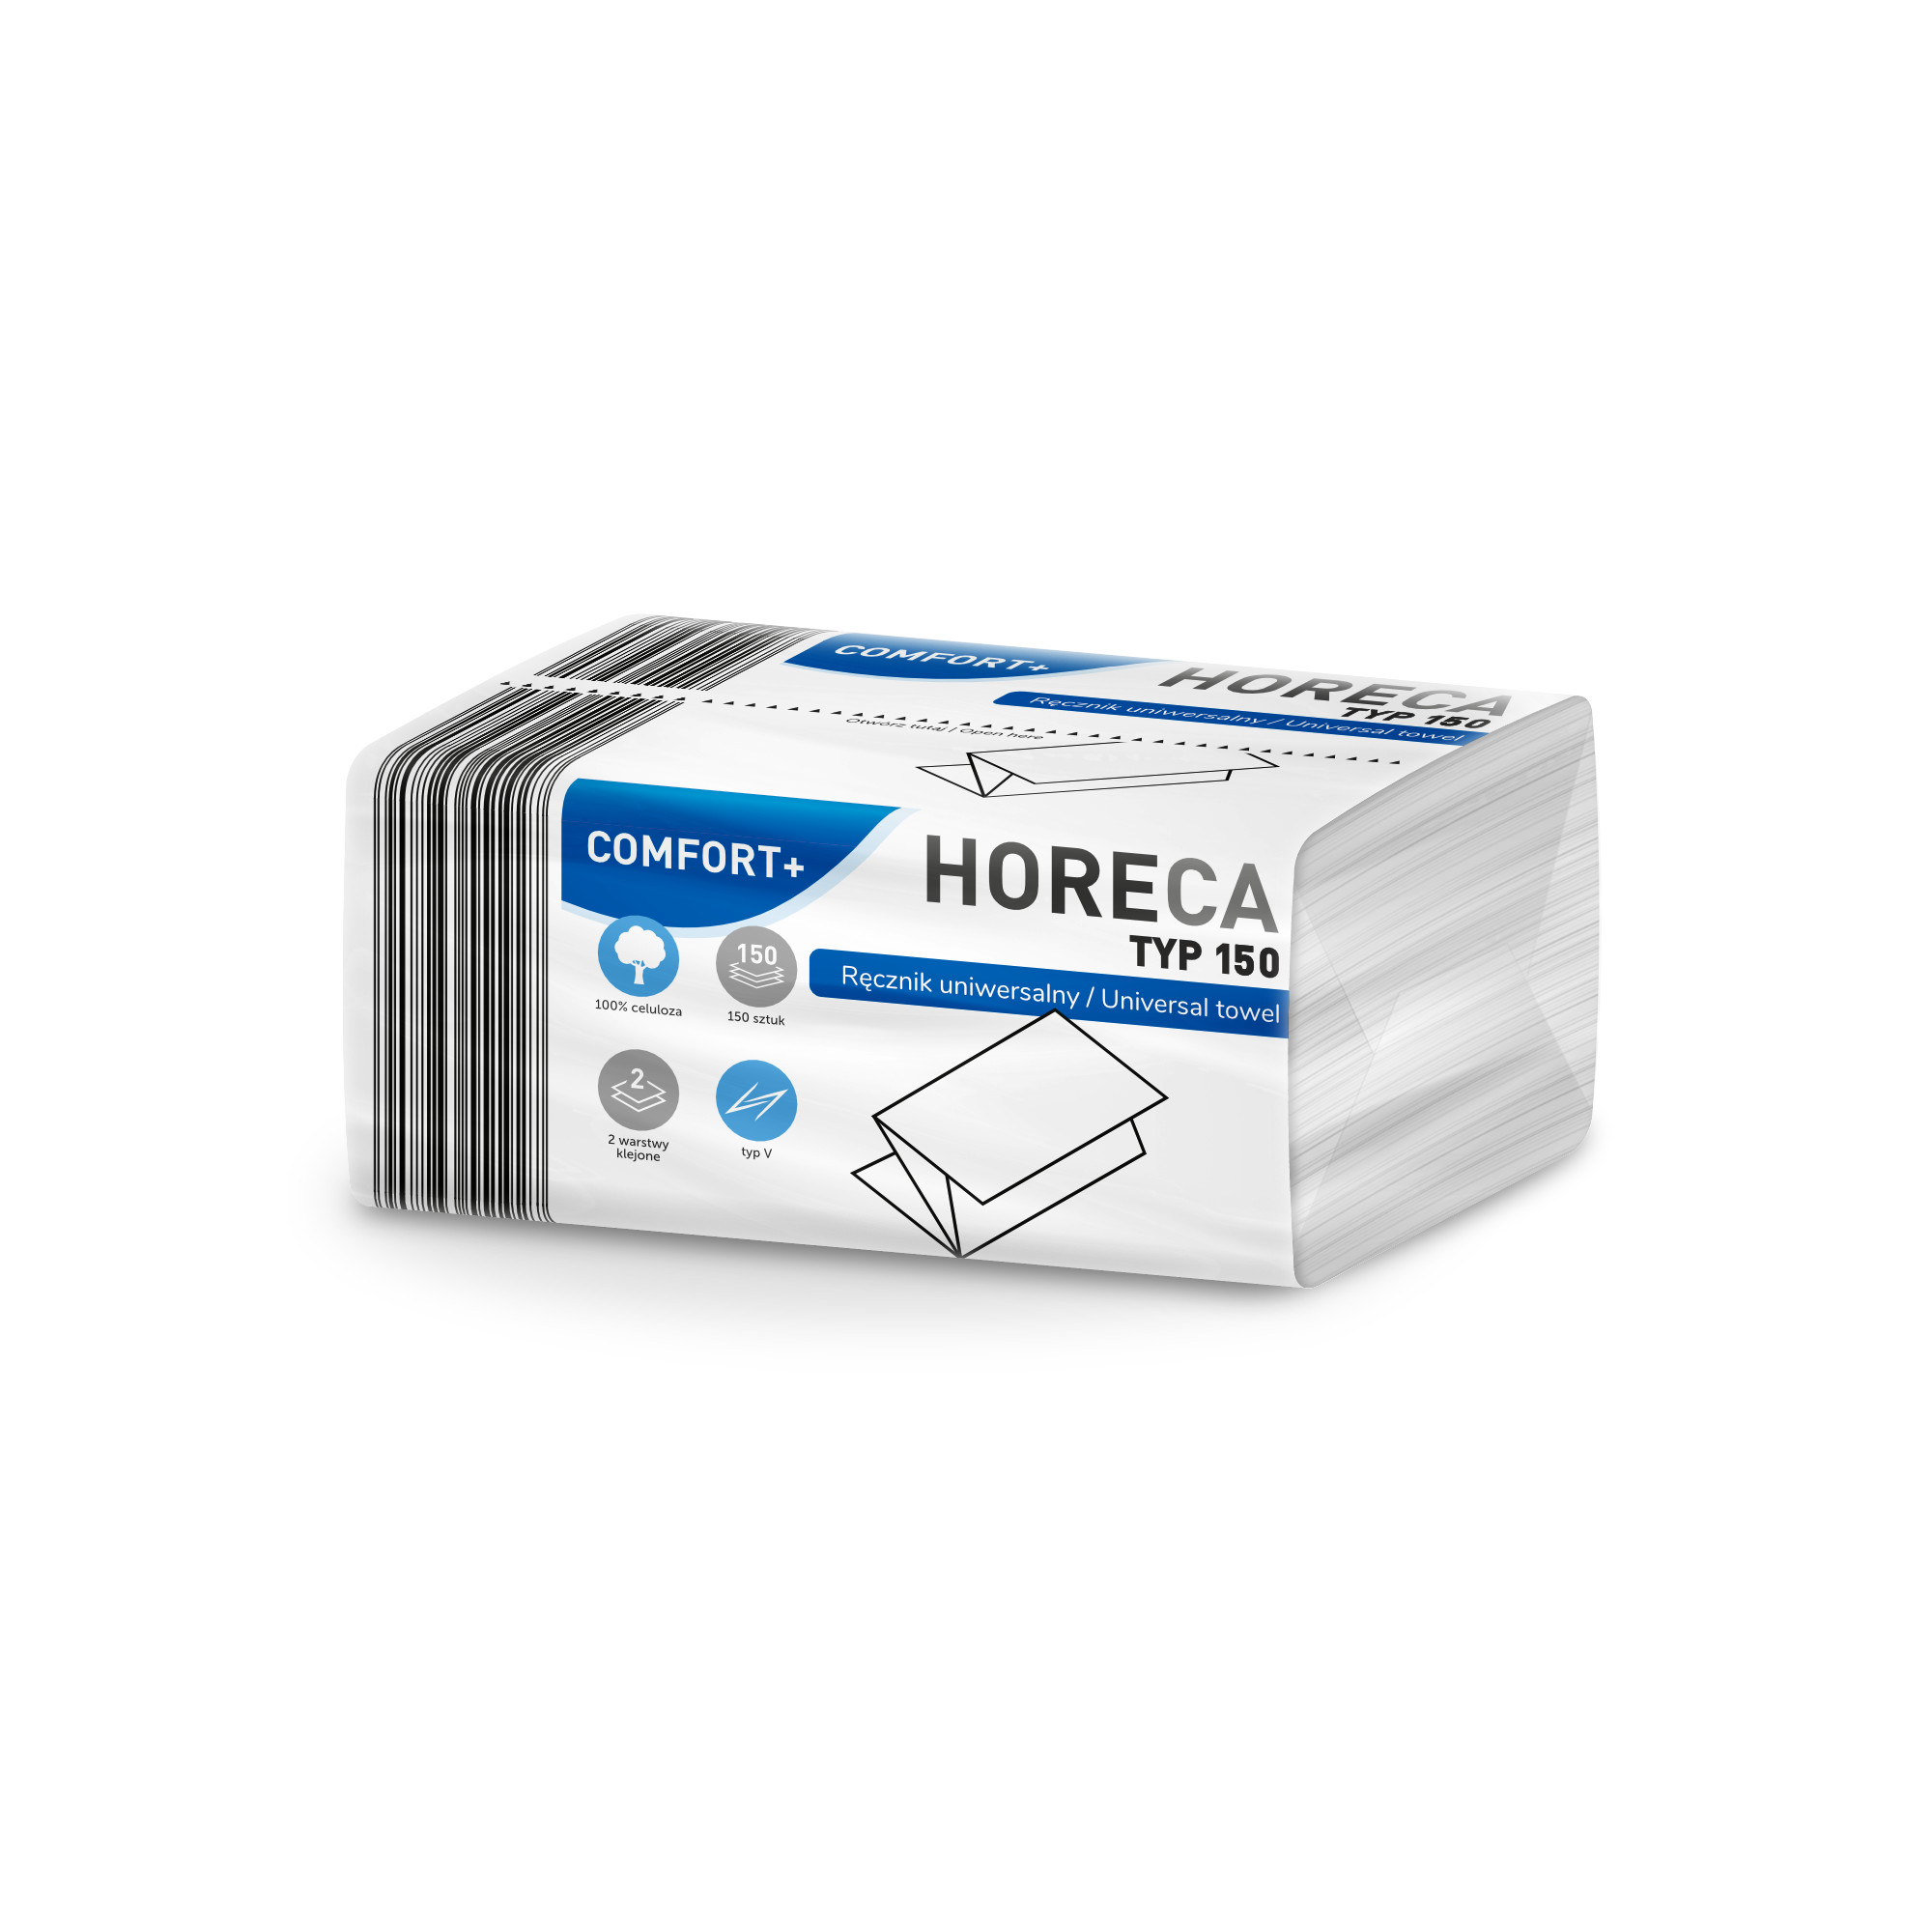 Folded paper towel HORECA COMFORT+  ZZ V 150L COMPACT 2 plies